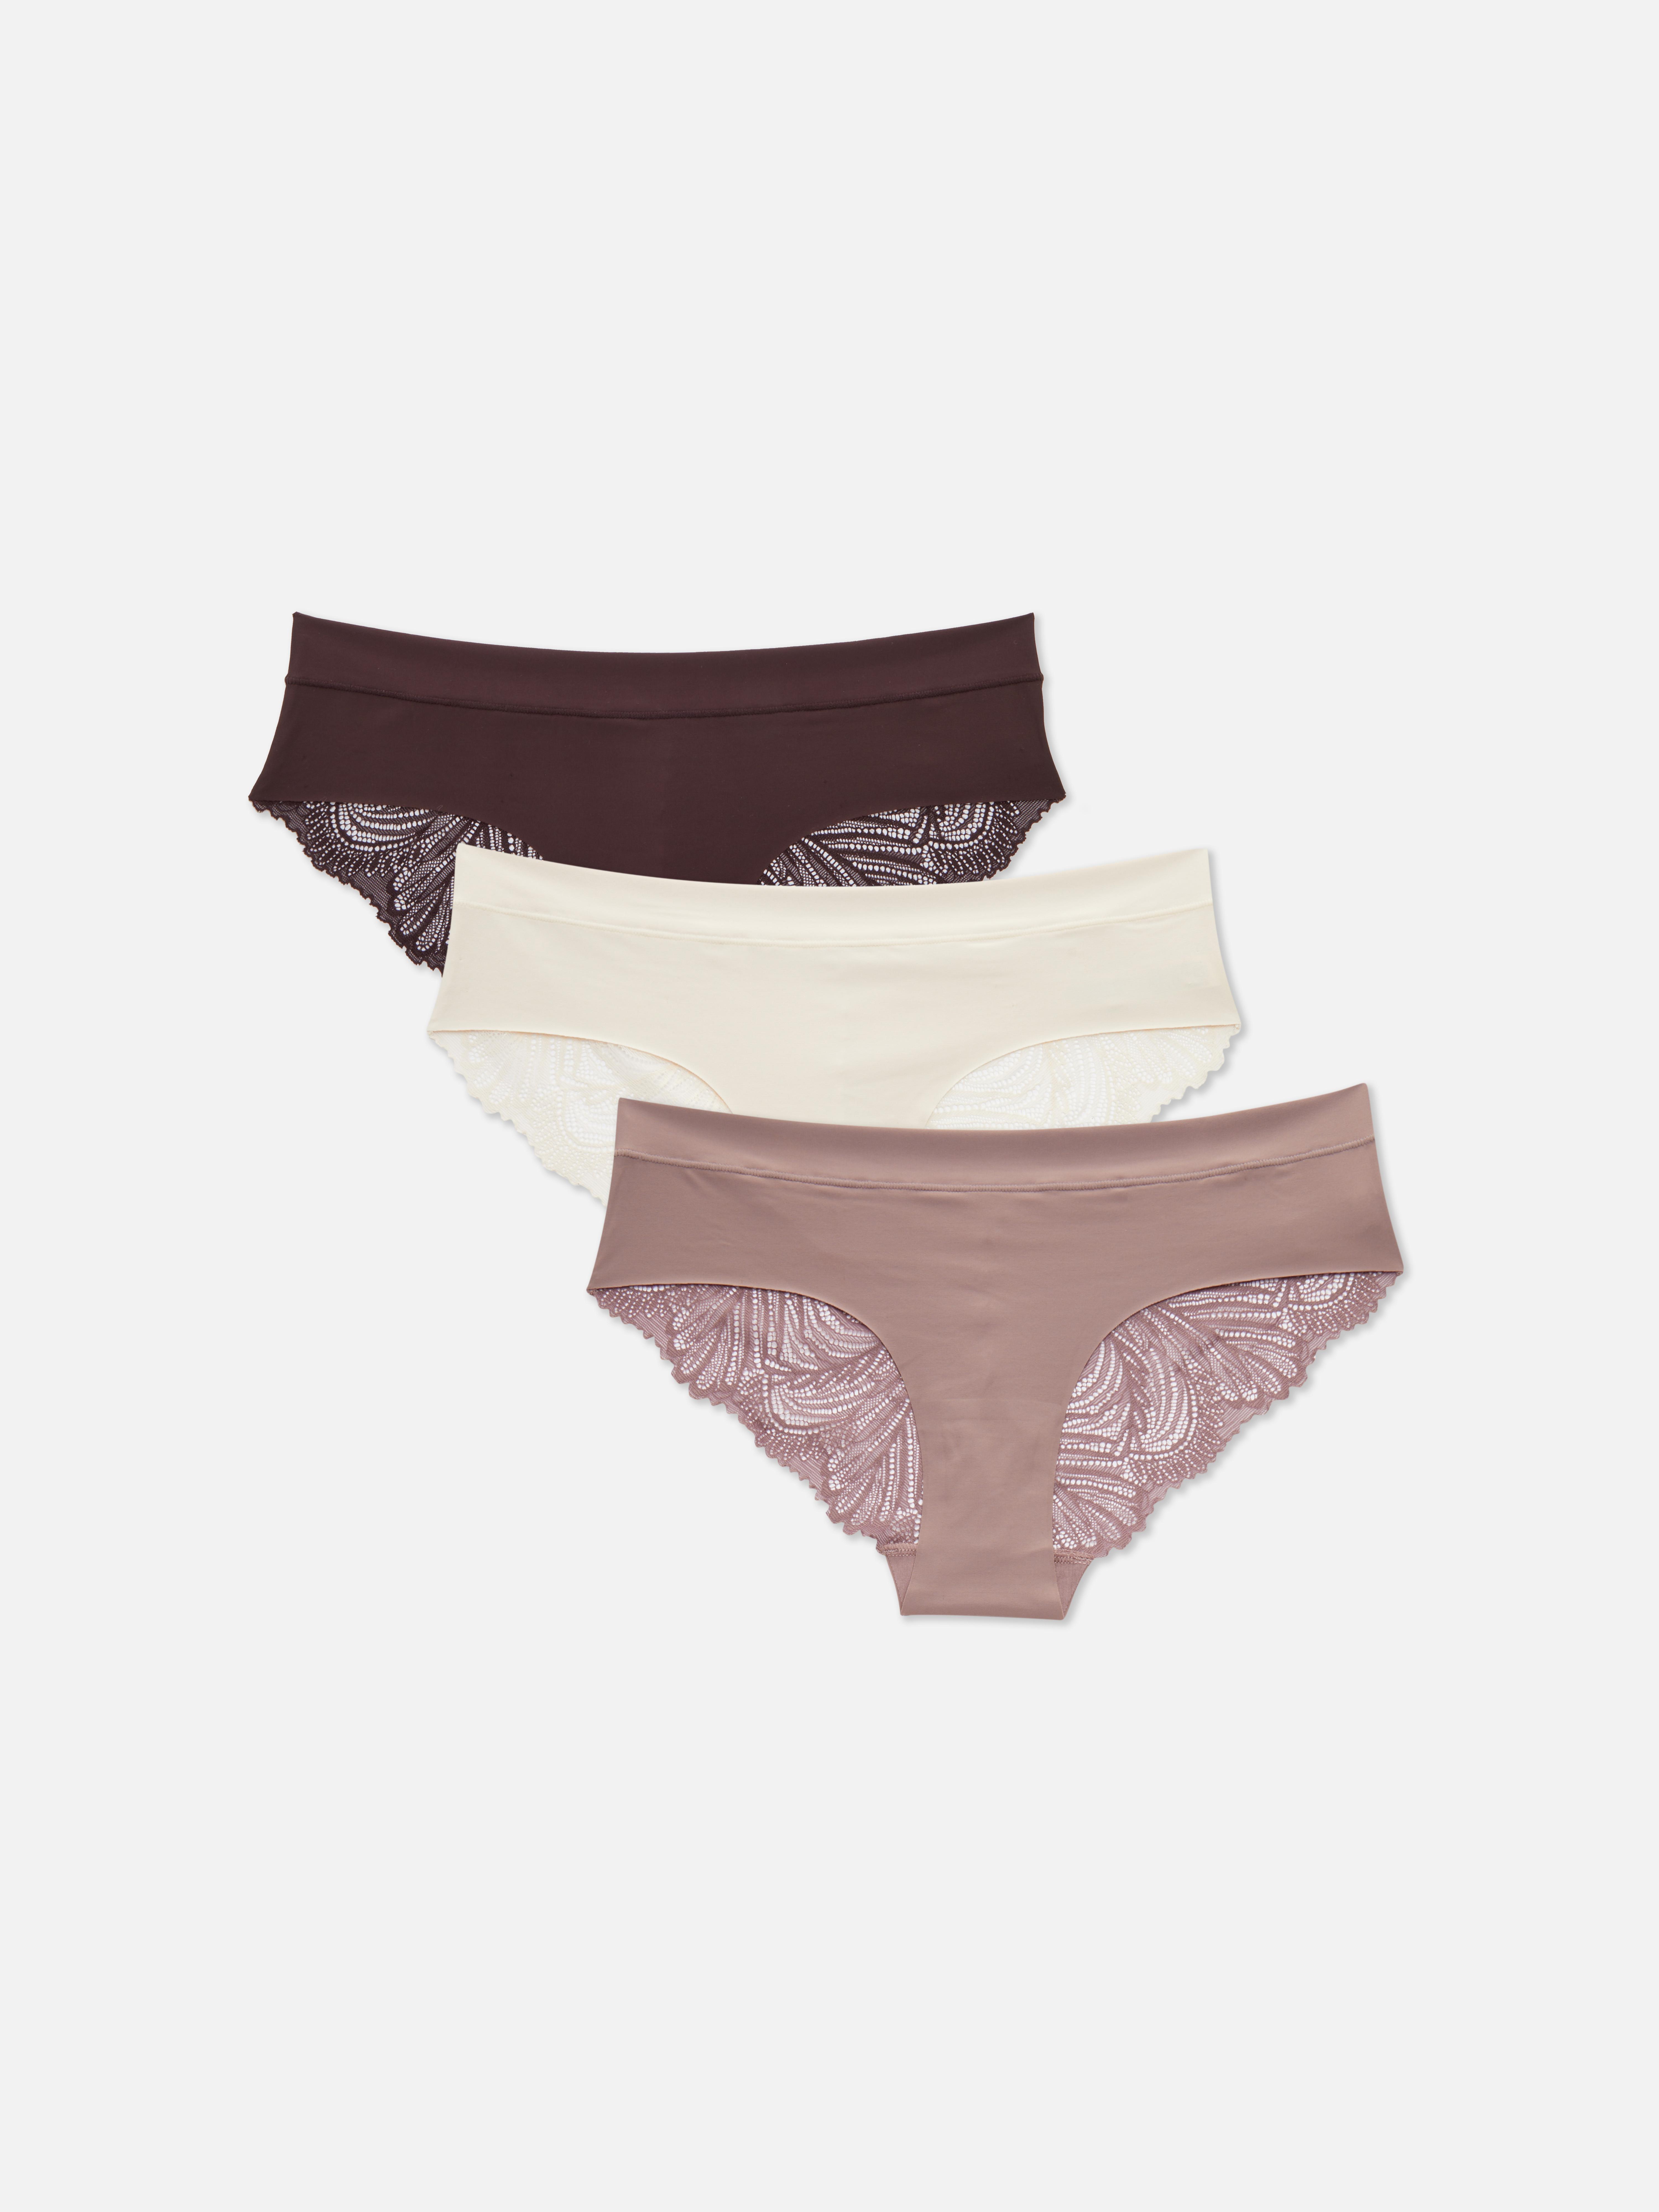 Primark on X: It's a comfy underwear kinda day 💕Bras £2/€3 each, Briefs  £5/€7 each #Primark #lingerie  / X